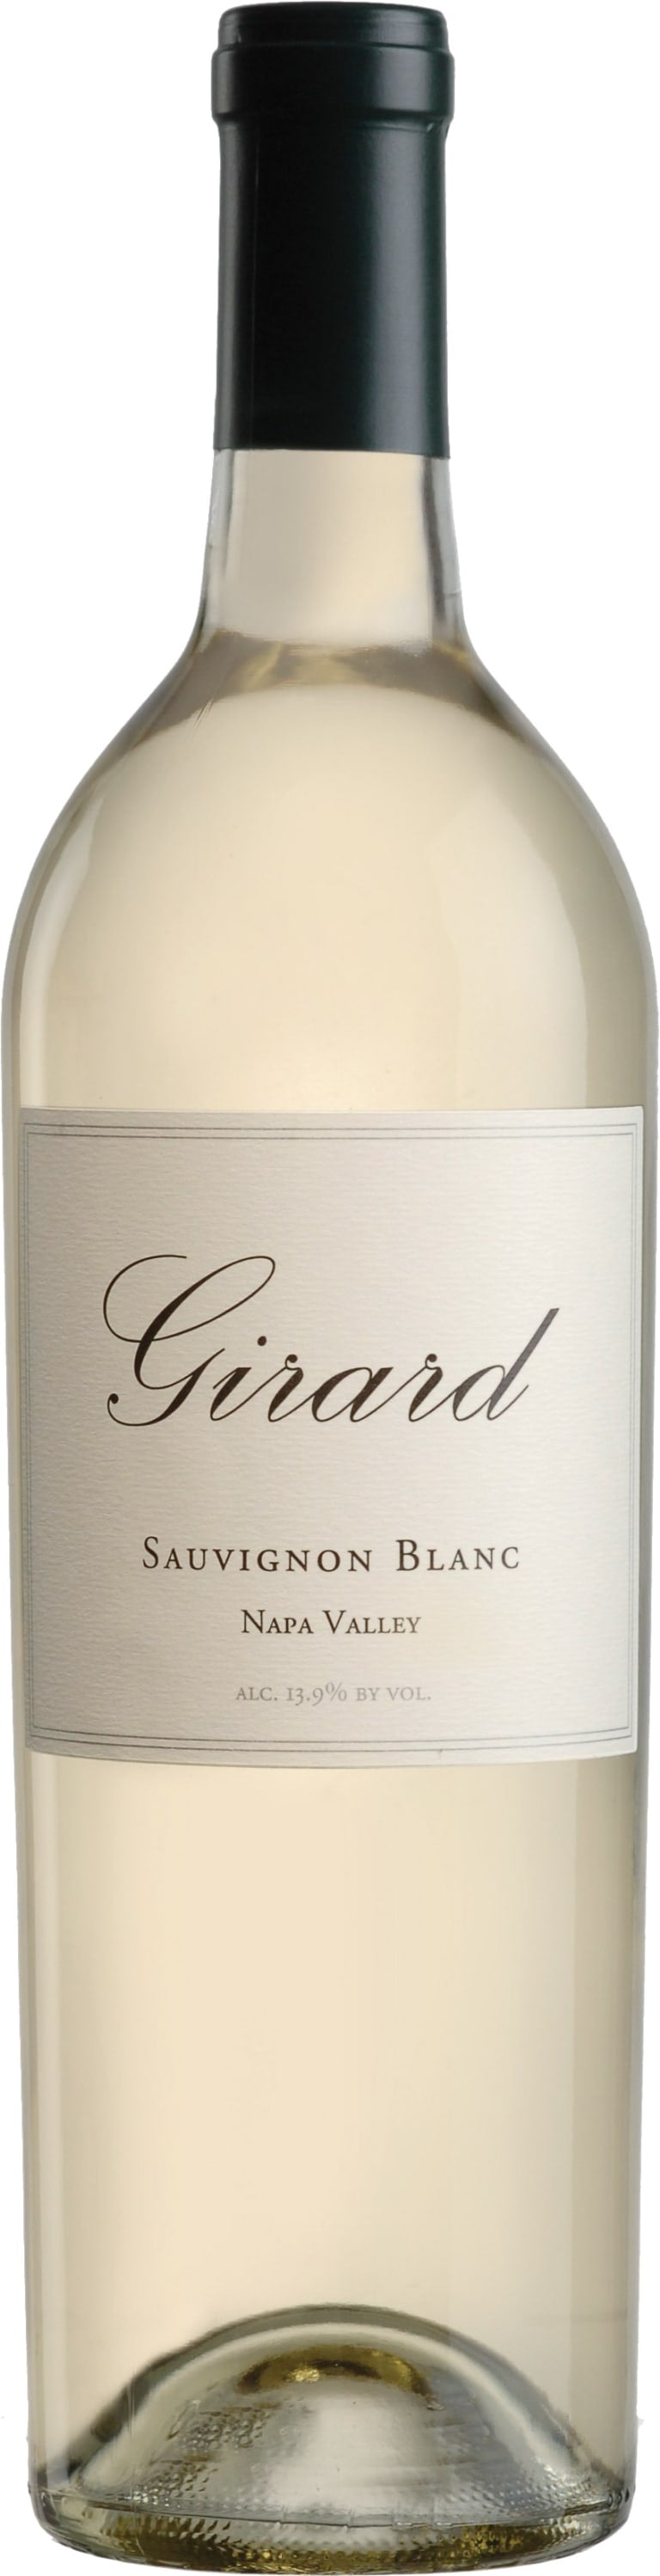 Girard Sauvignon Blanc 2020